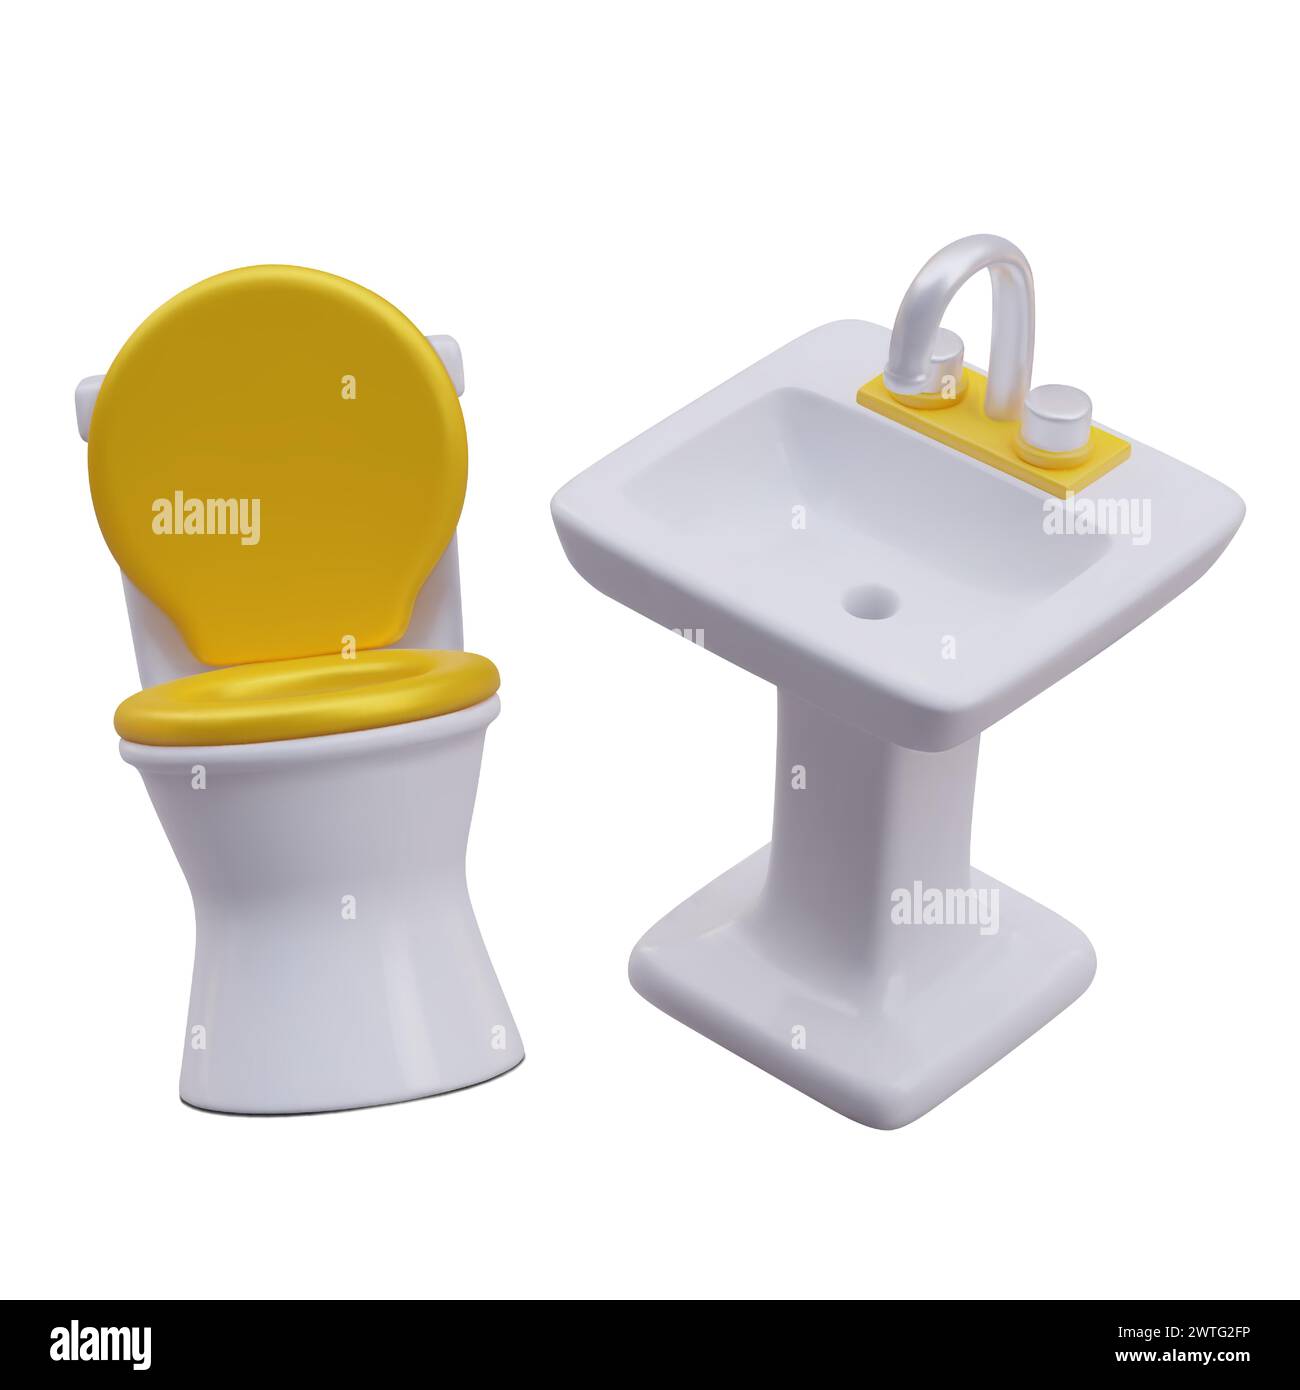 Cuvette de toilette réaliste avec couvercle jaune et lavabo. Illustration vectorielle texturée avec des reflets. Nettoyer les appareils sanitaires. Modèles pour la publicité cl Illustration de Vecteur